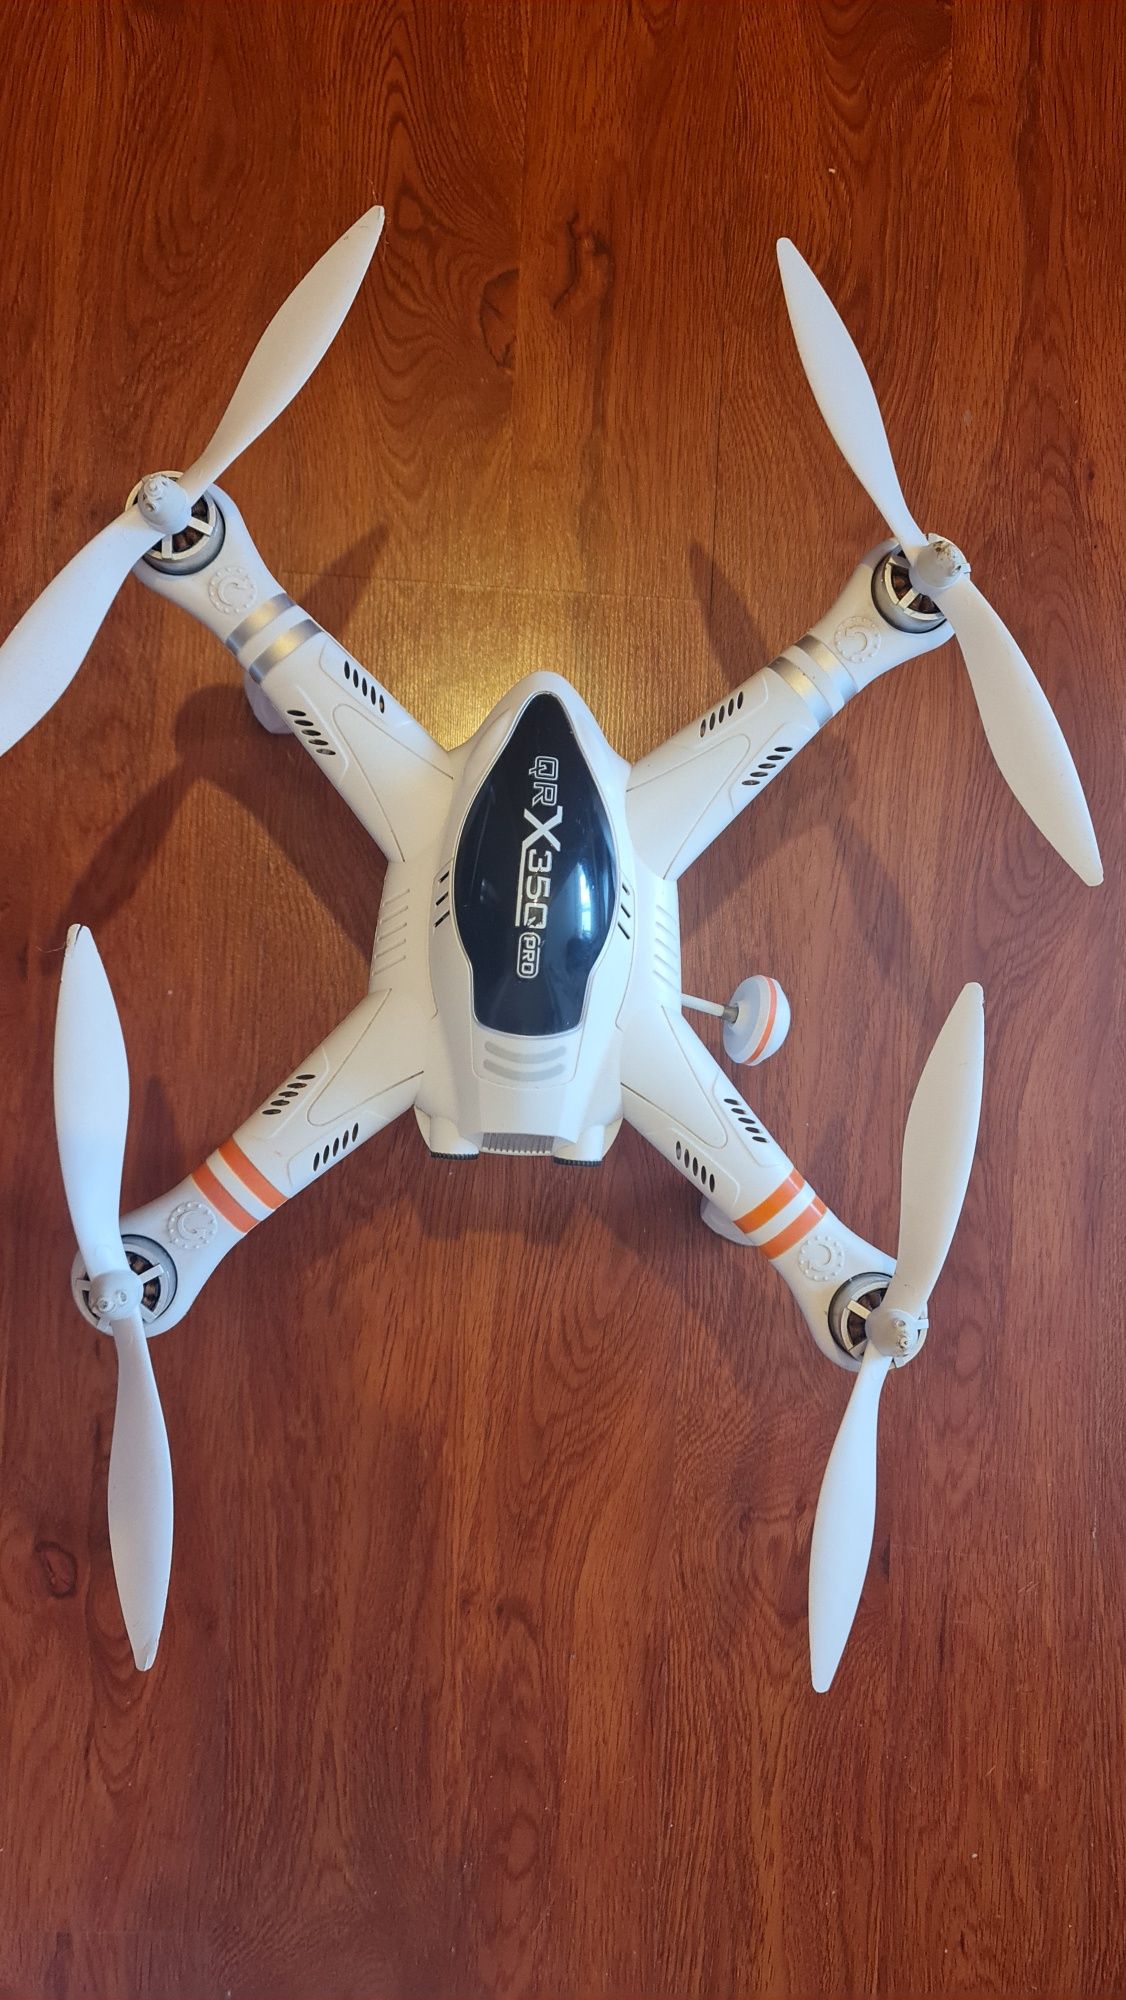 Drona walkera qr x350 pro